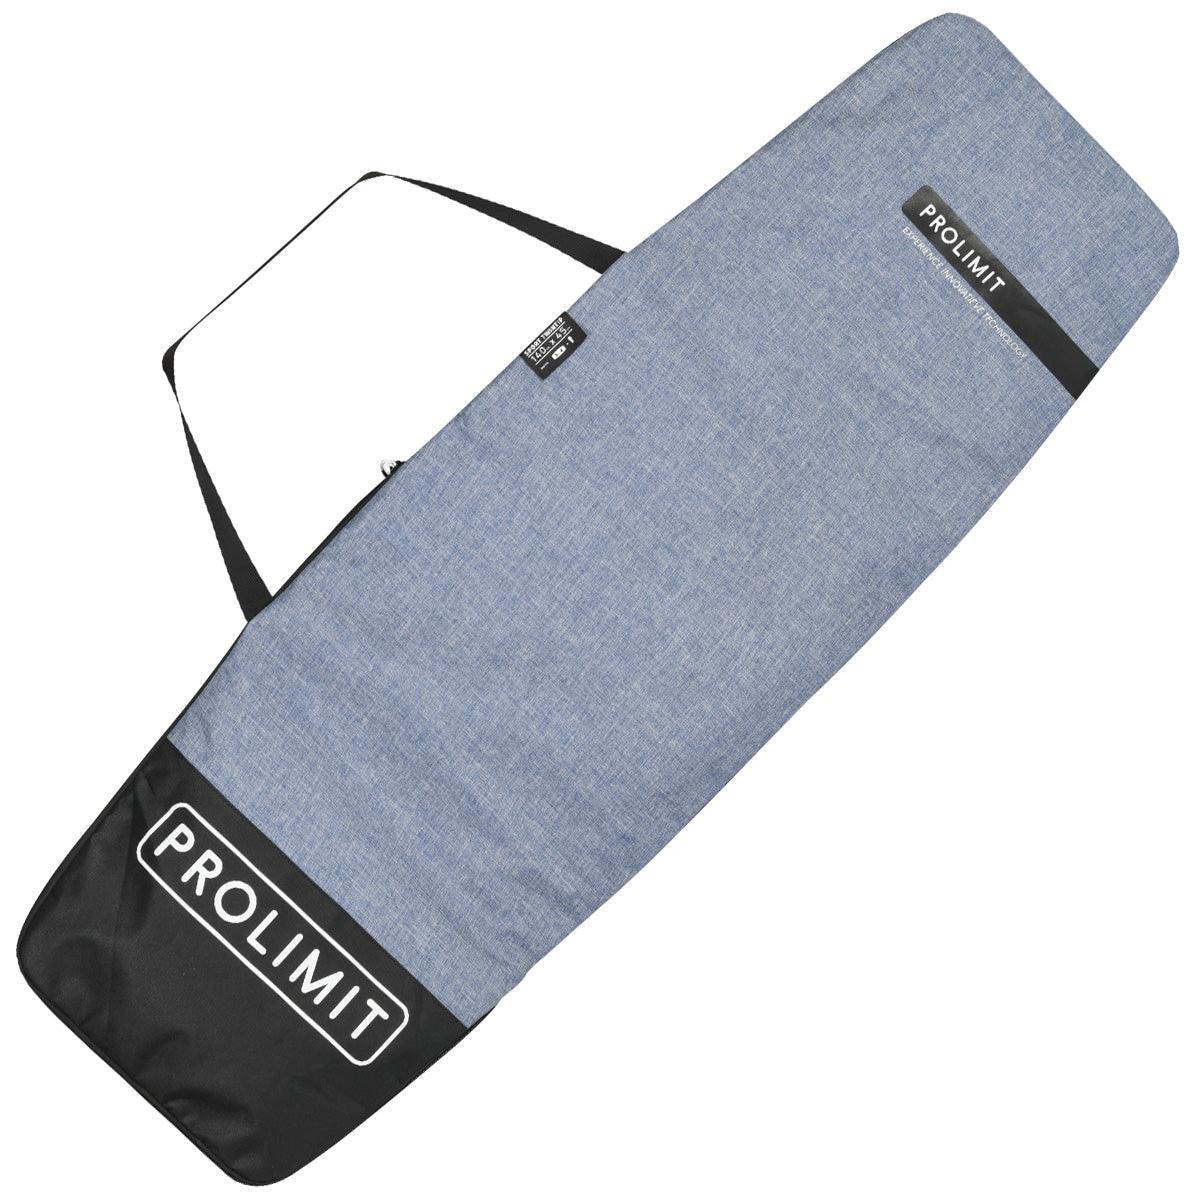 Prolimit Sport Twintip Board Bag - Kiteshop.com